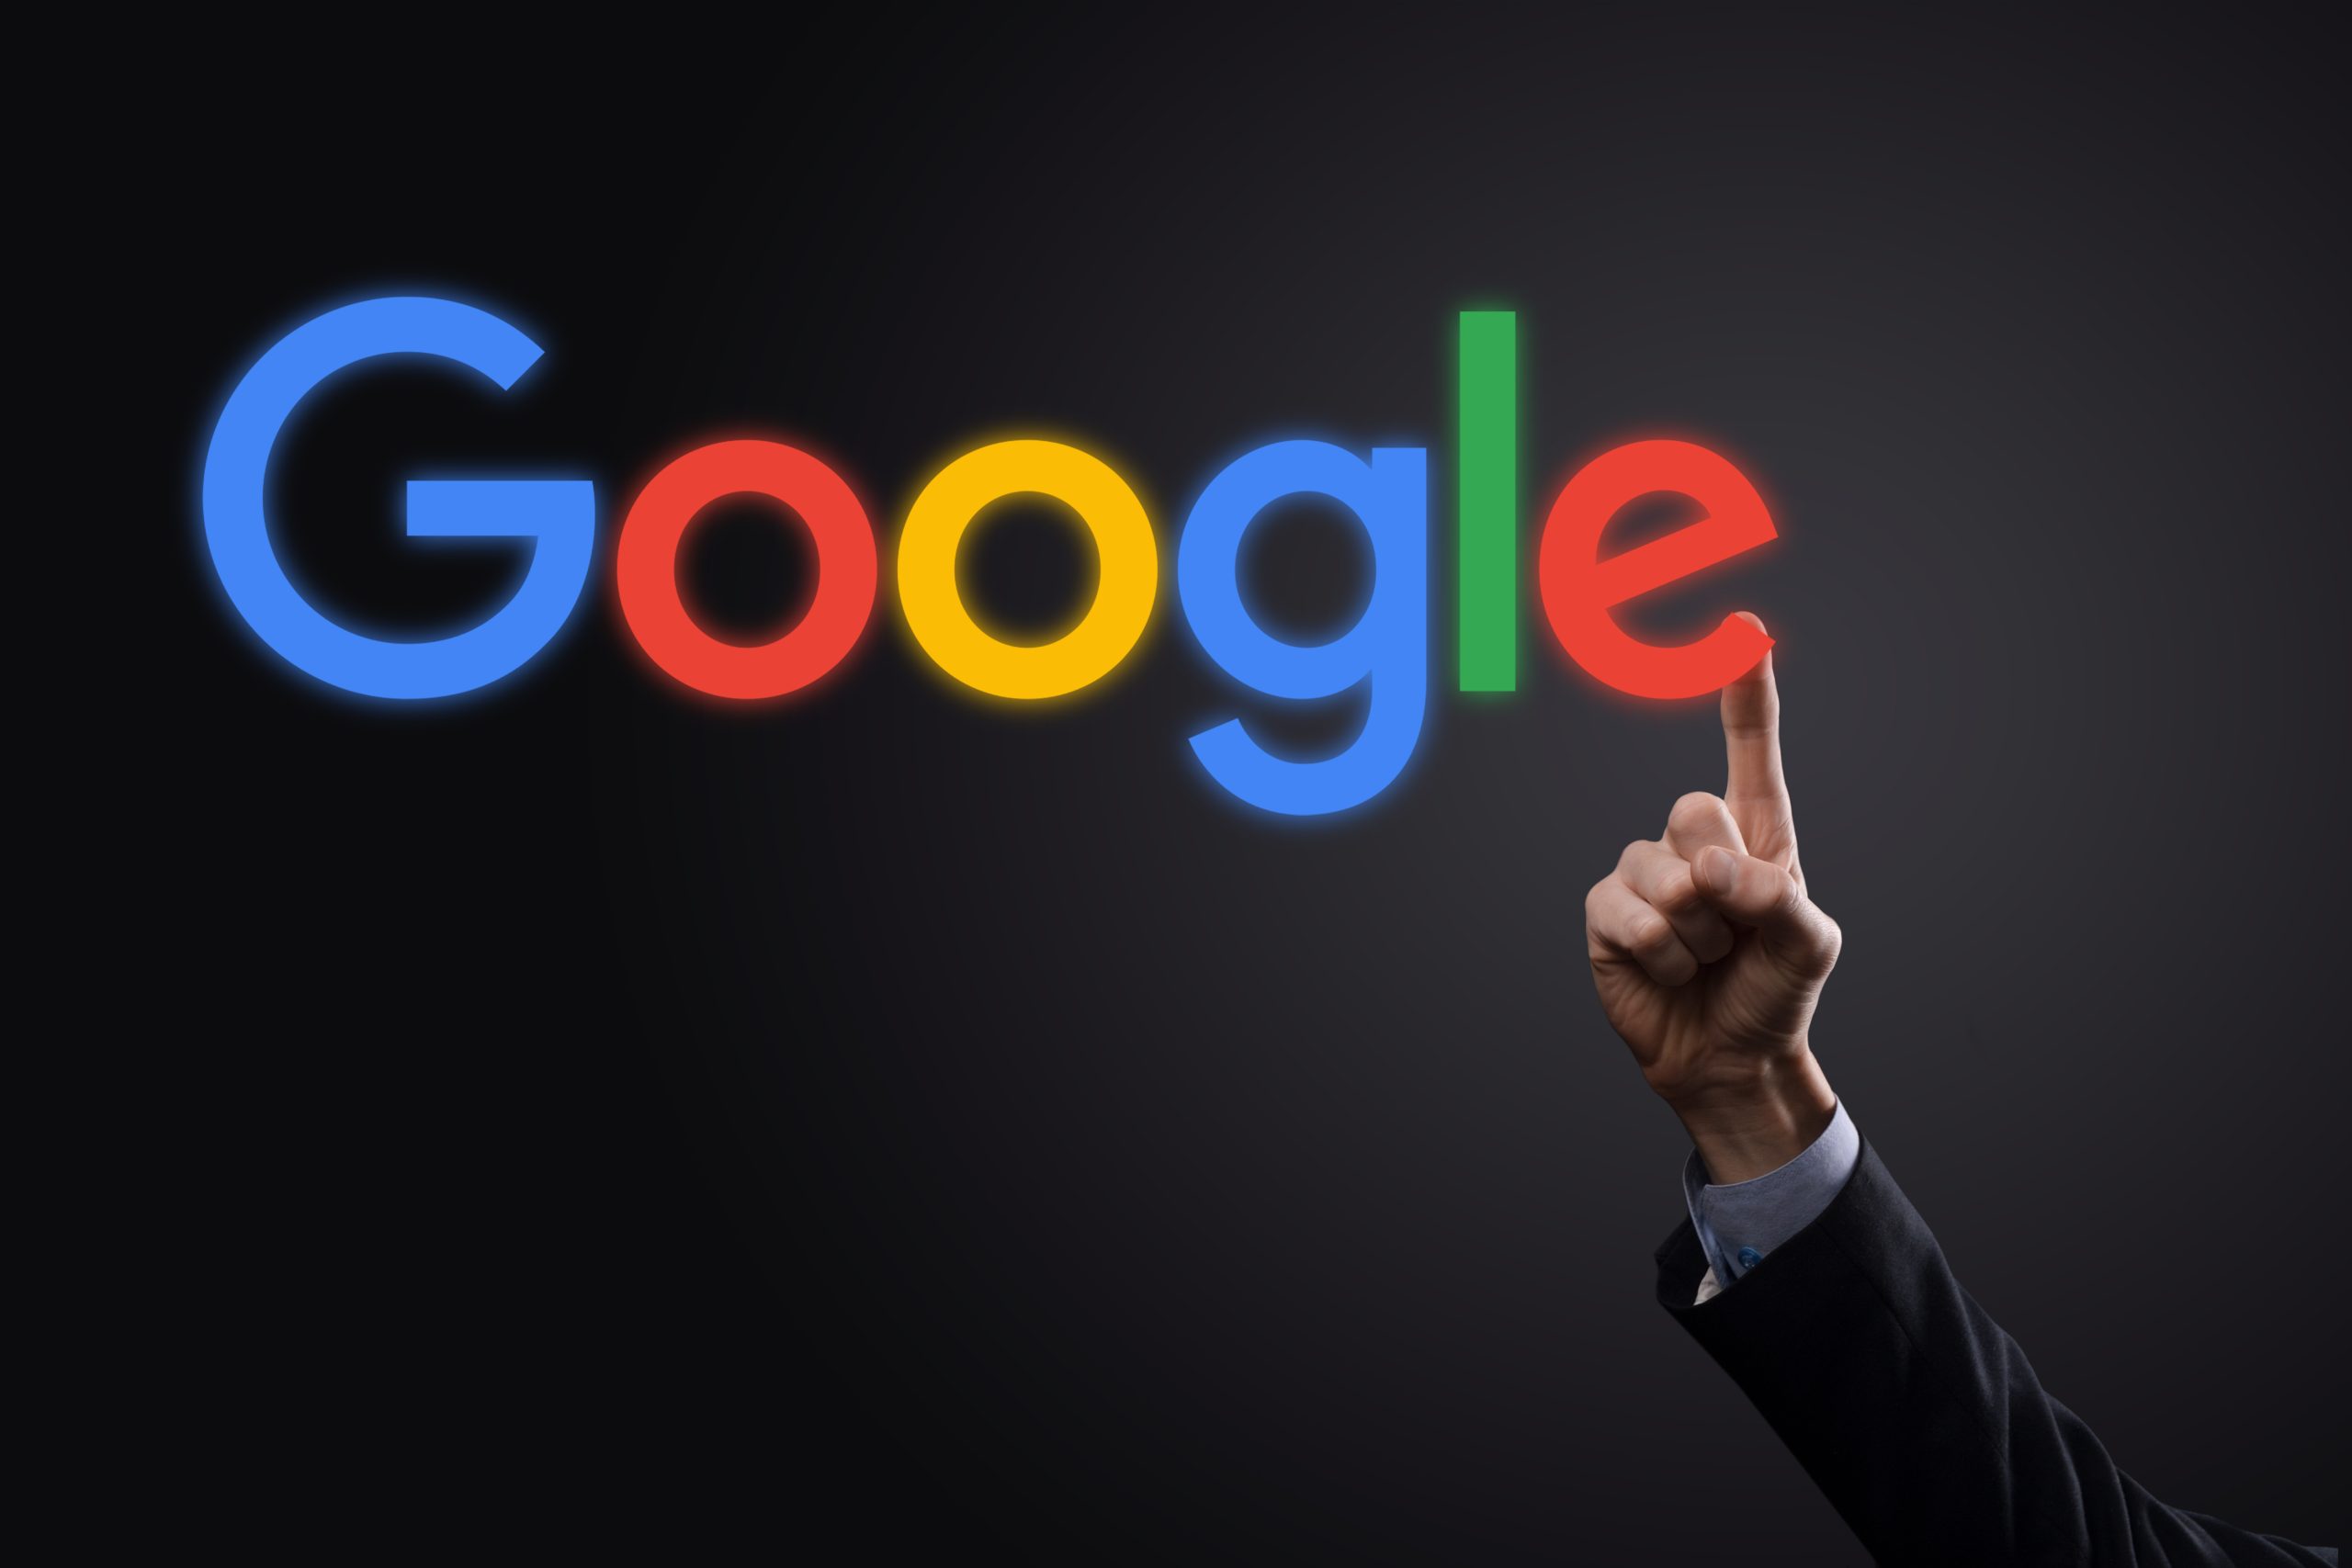 WINOGRADIW, UKRAINE - 30. DEZEMBER 2020. Geschäftsmann in einem Anzug auf einem dunklen Hintergrund hält ein Google-Logo Inschrift. Google ist die beliebteste Suchmaschine der Welt.